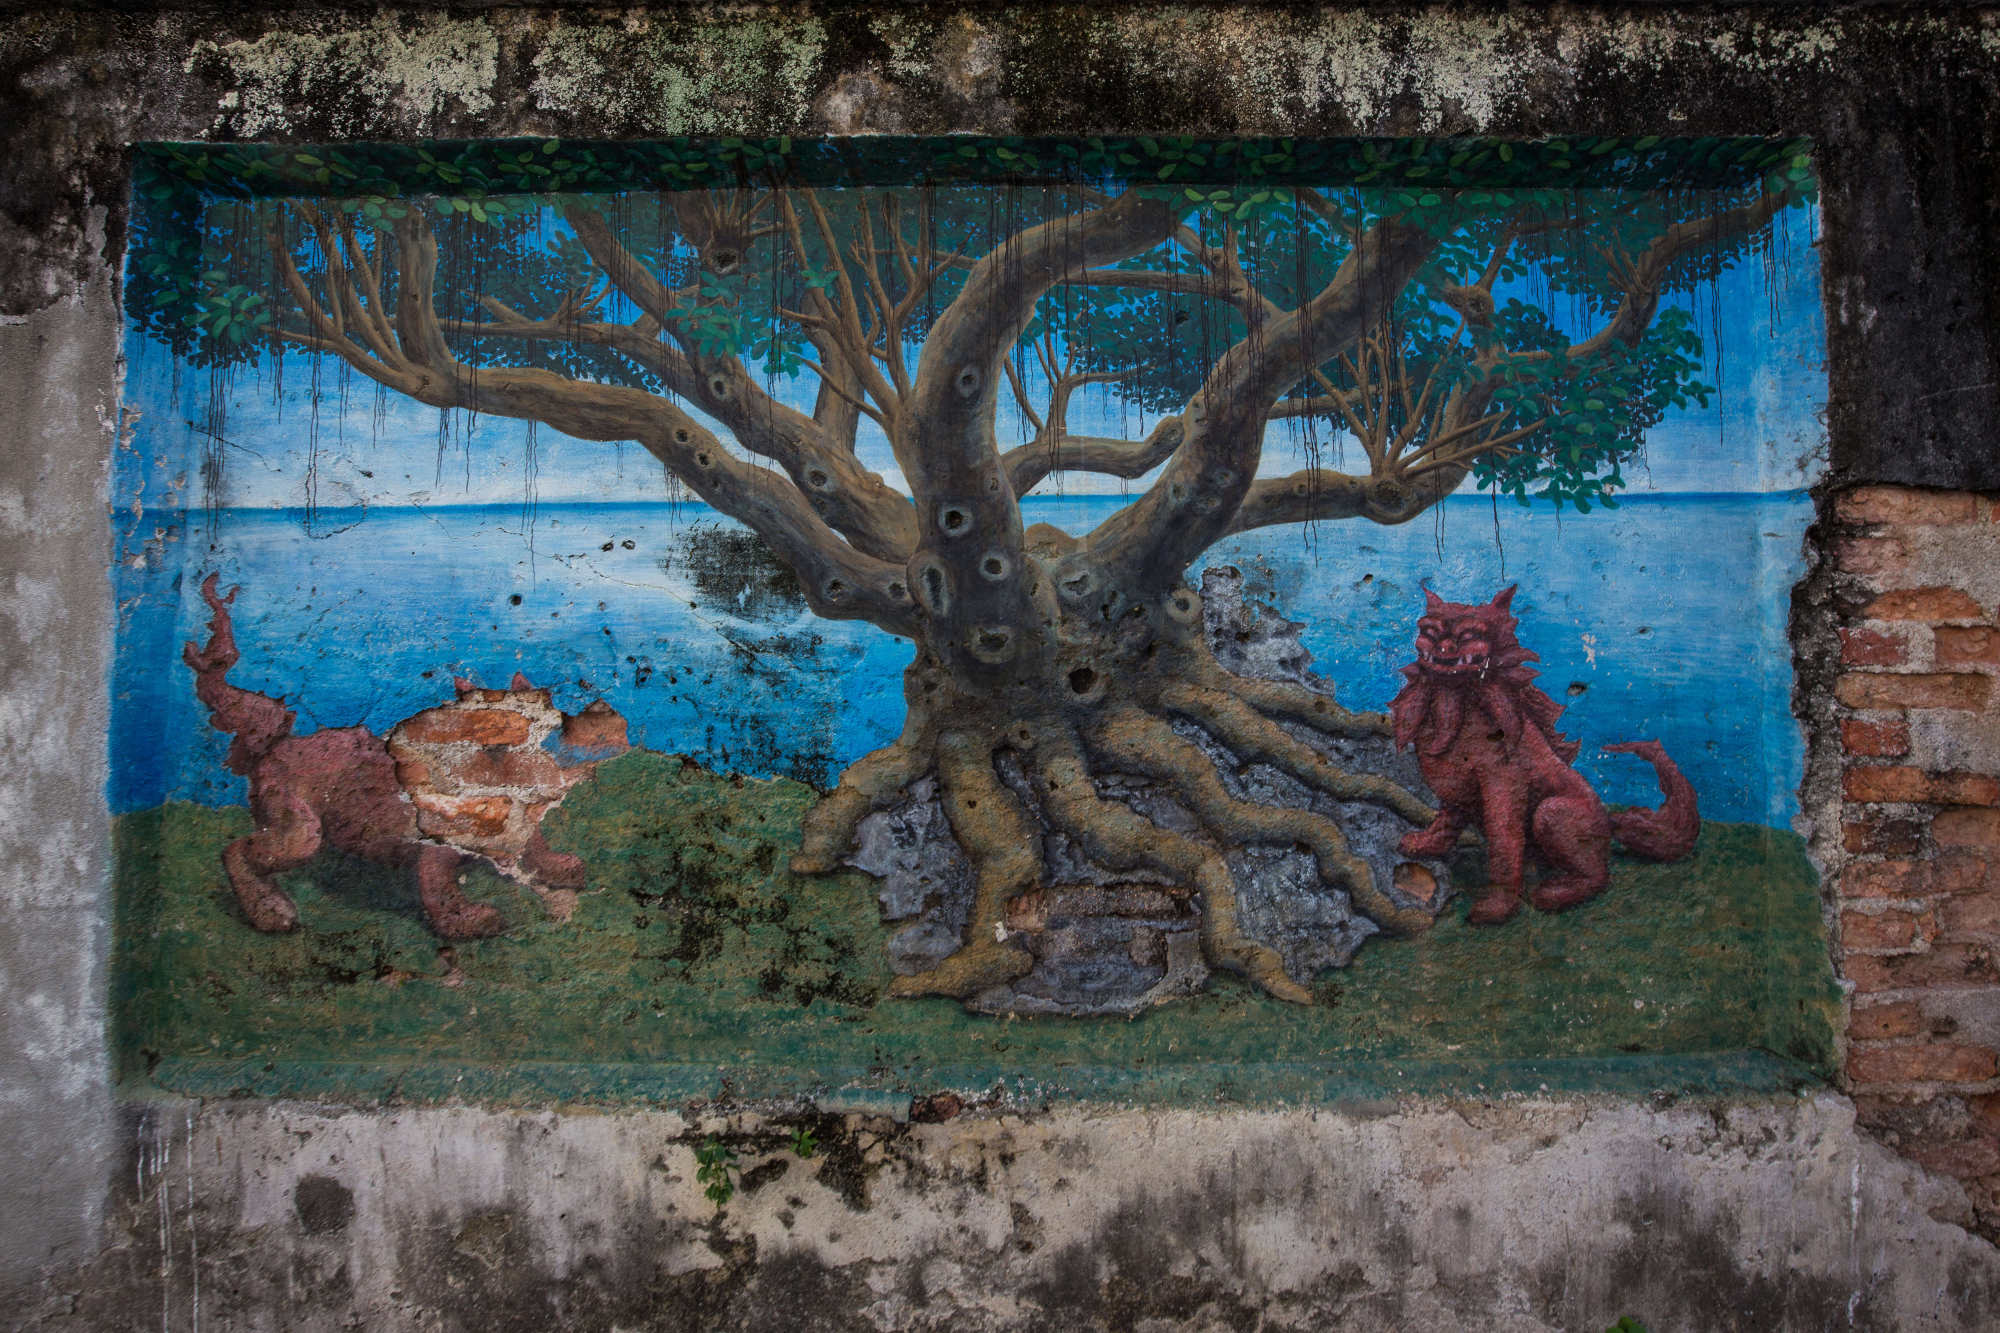 马来西亚乔治城的街头艺术狩猎如何揭示槟城丰富的历史